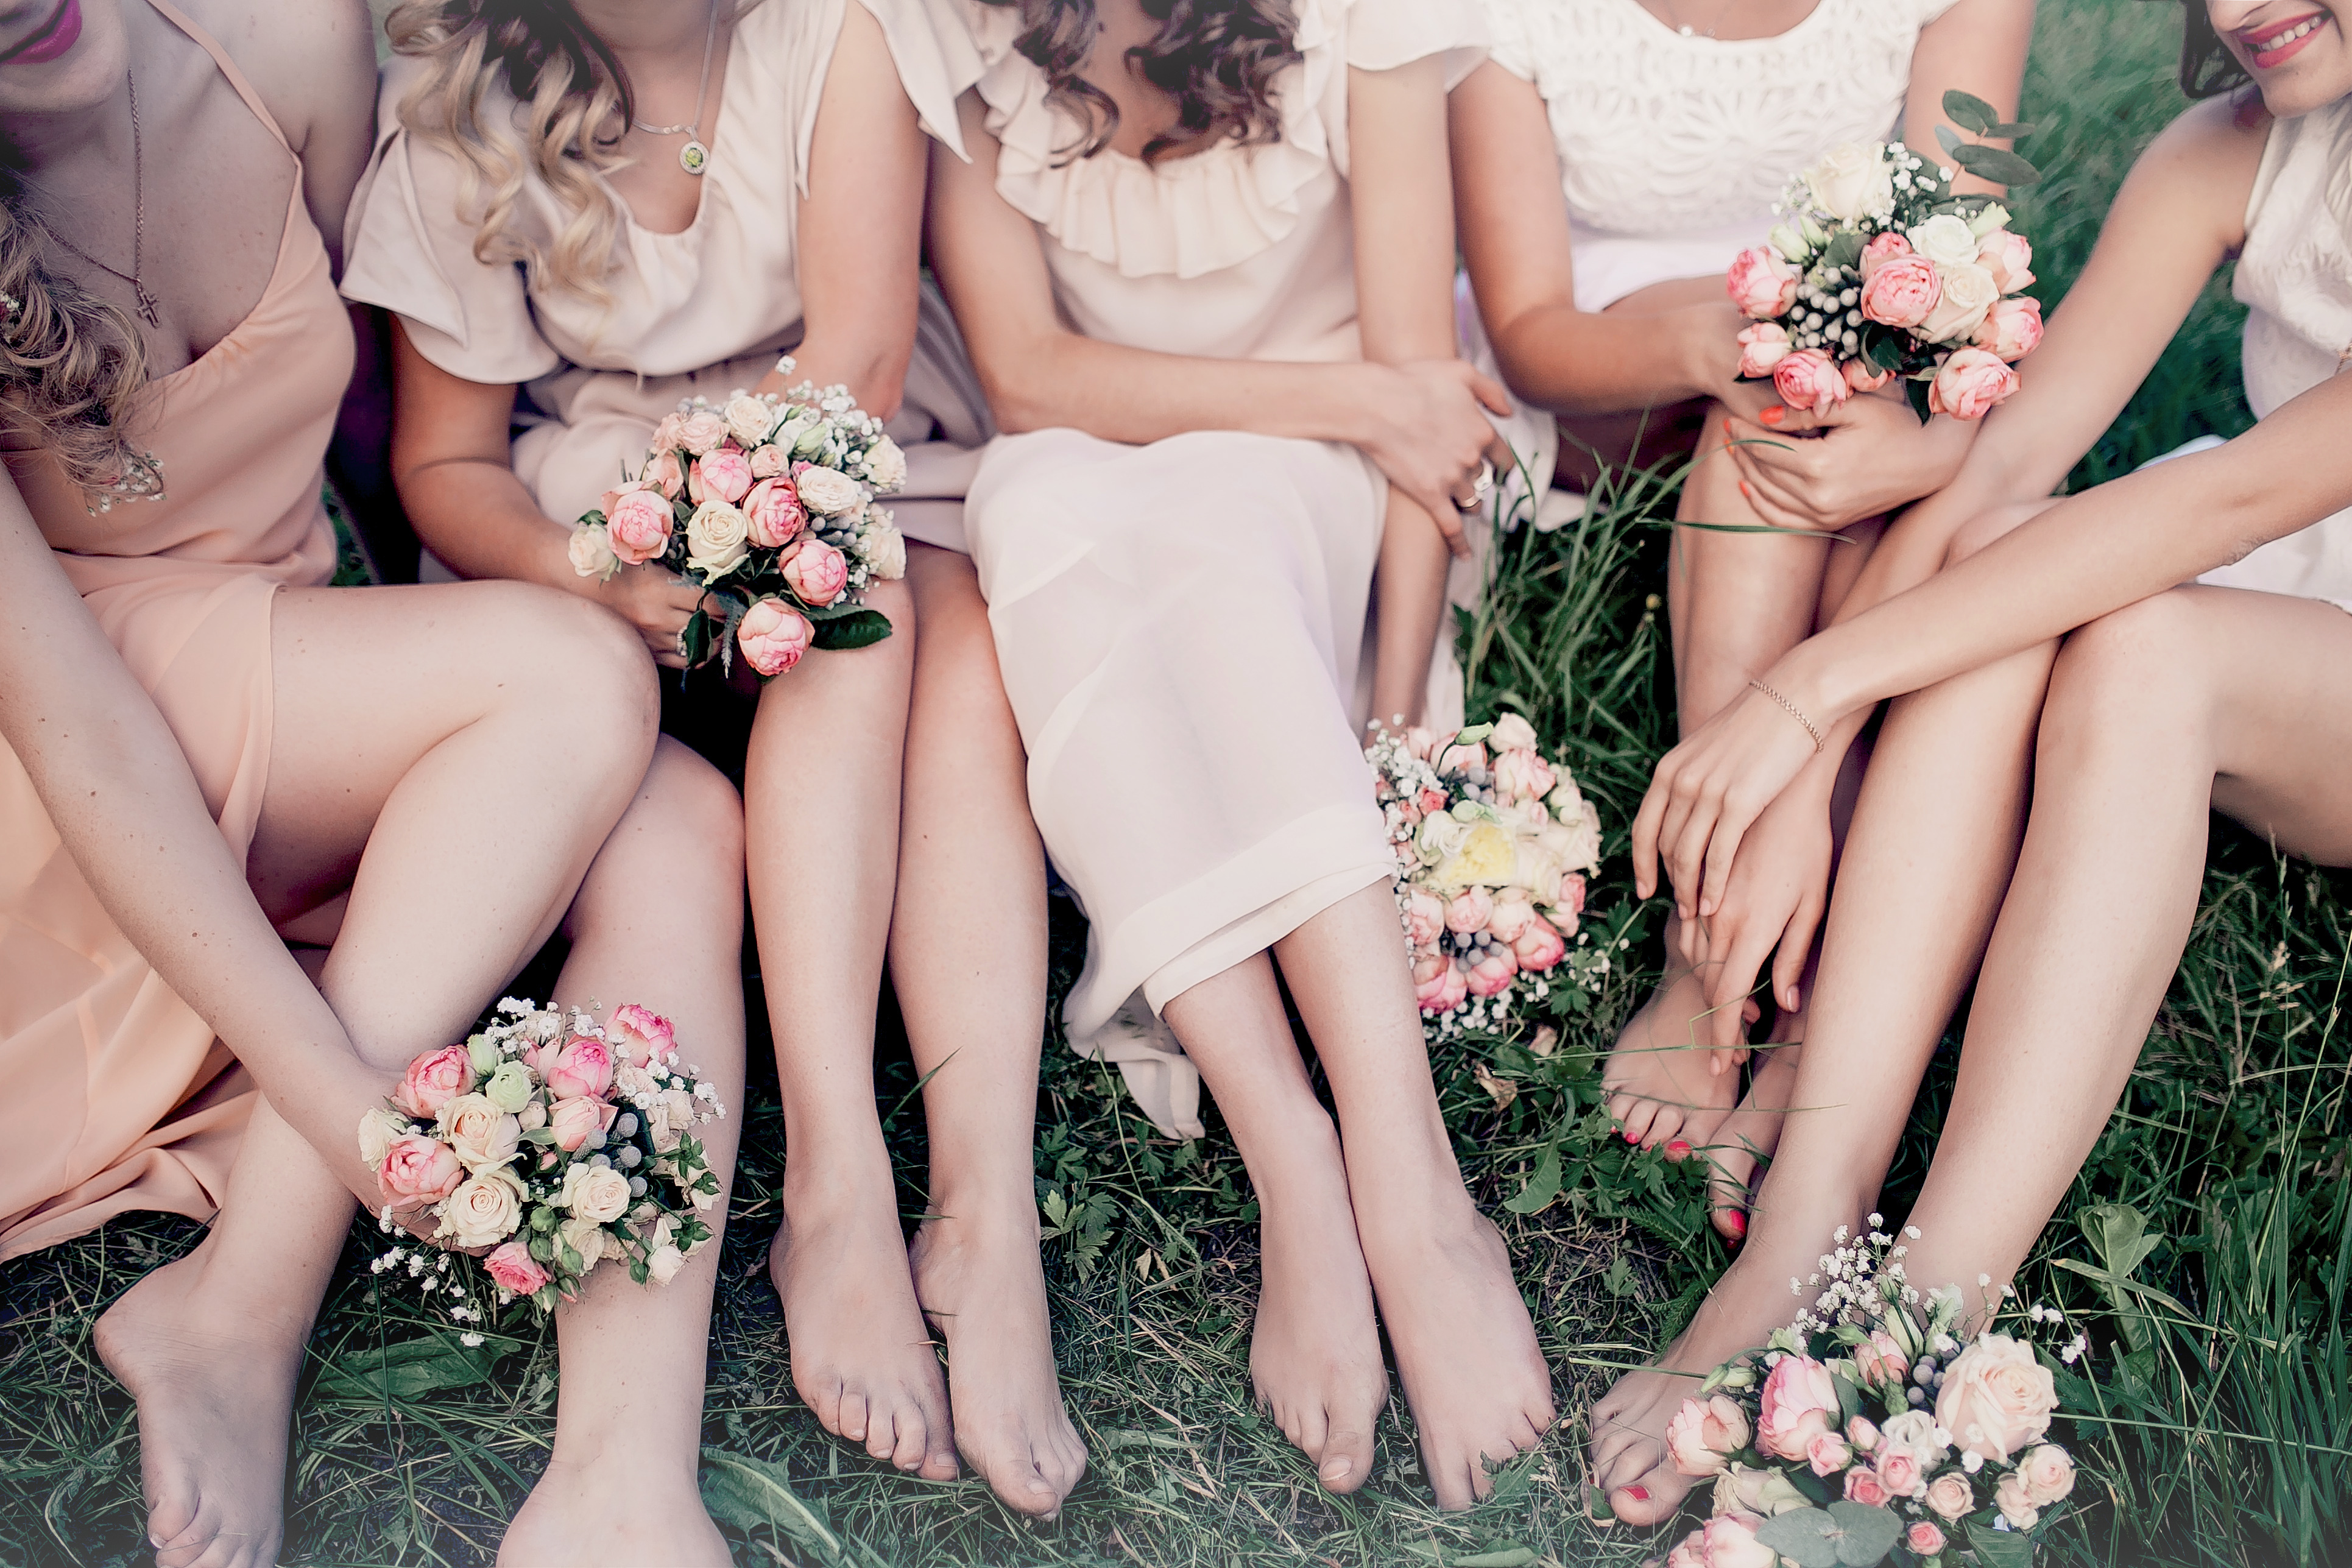 Eine Braut und ihre Brautjungfern | Quelle: Shutterstock